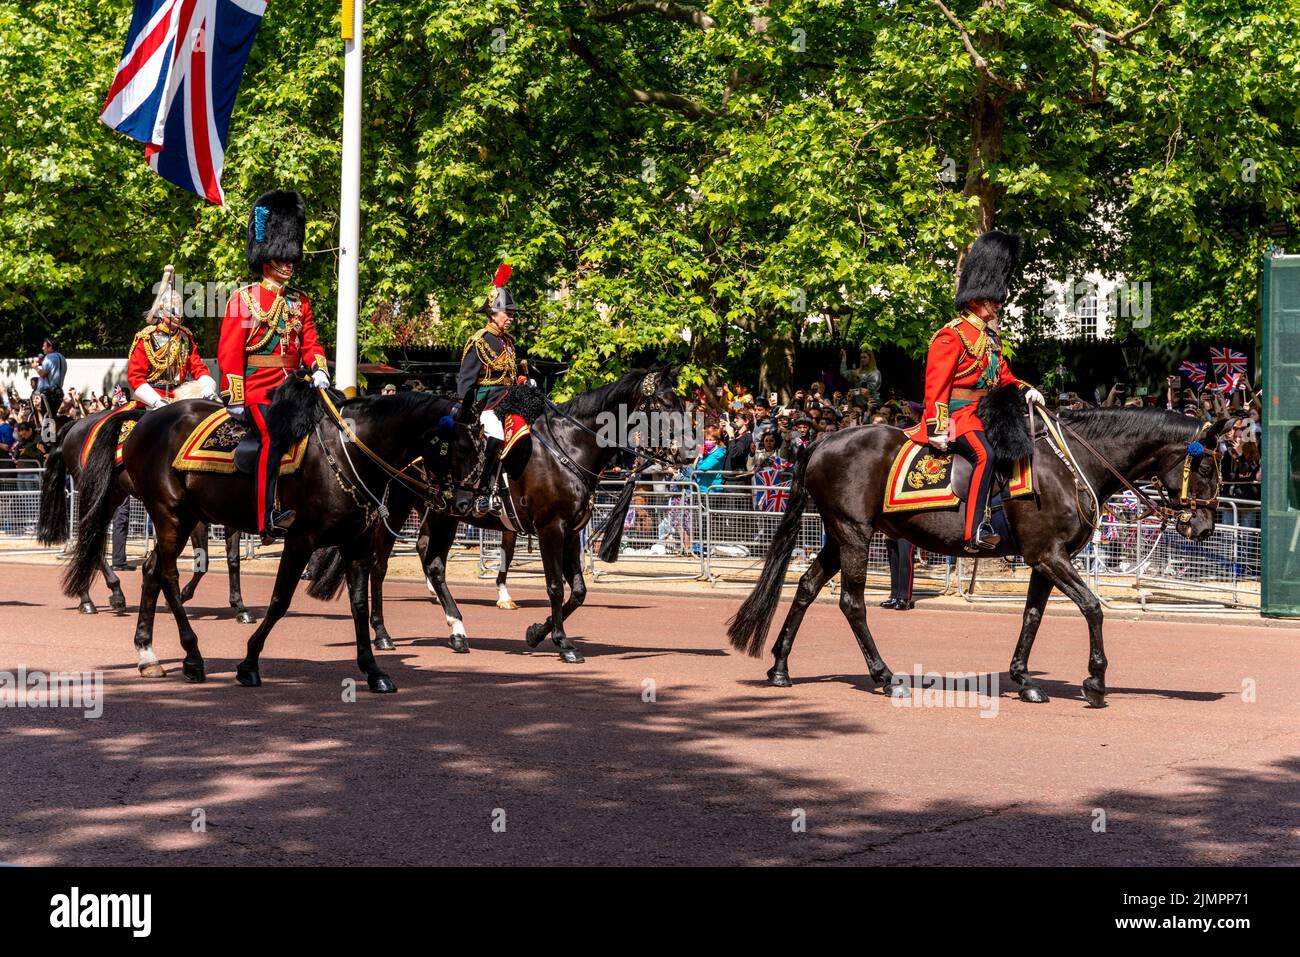 Miembros de la familia real británica de camino a la ceremonia de Trooping the Colour, el desfile de cumpleaños de Queens, el centro comercial, Londres, Reino Unido. Foto de stock